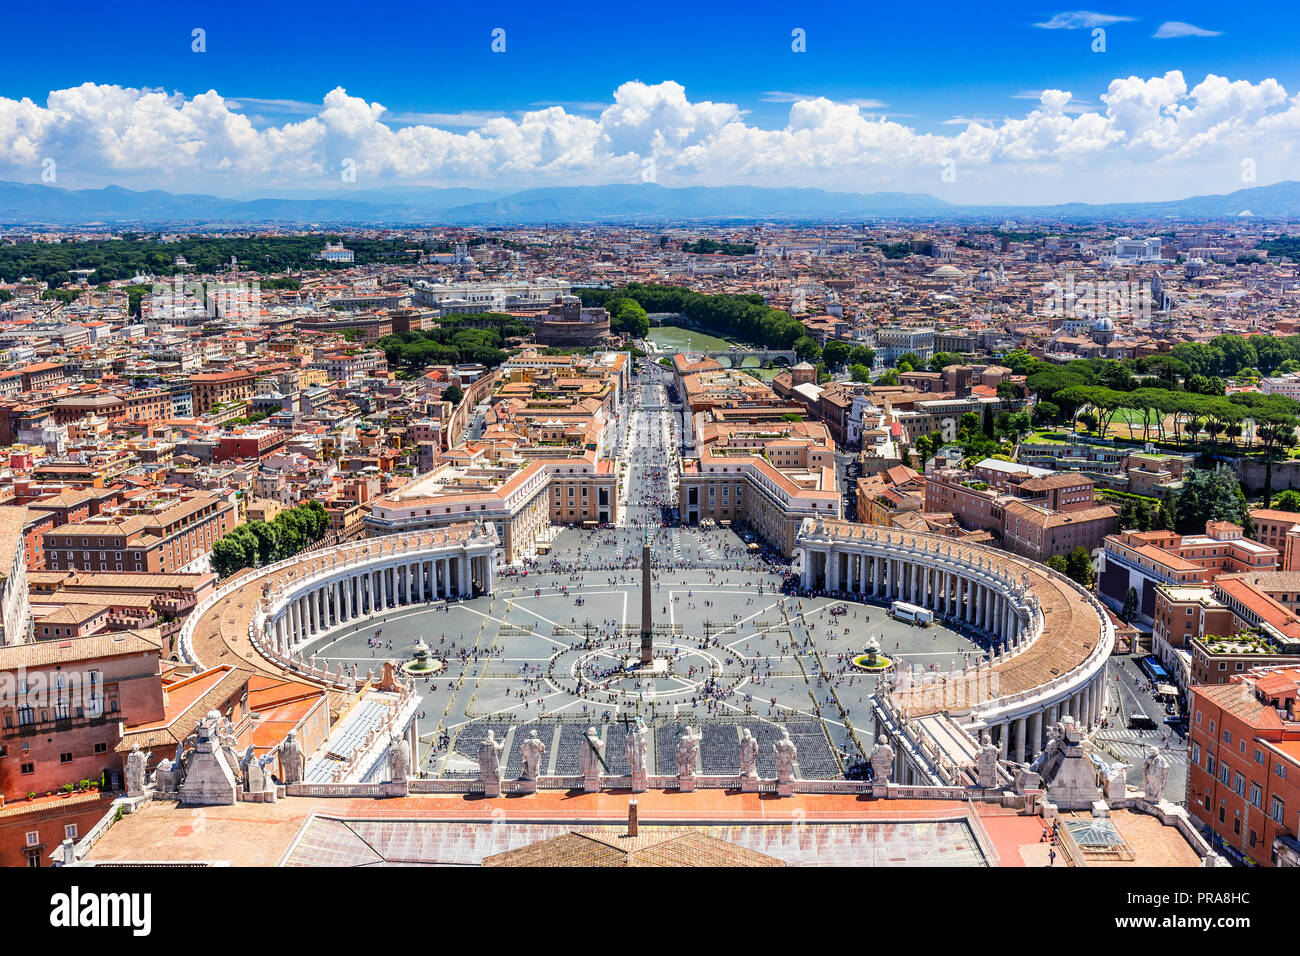 Rome, Italie. Célèbre la place Saint Pierre au Vatican et vue aérienne de la ville. Banque D'Images